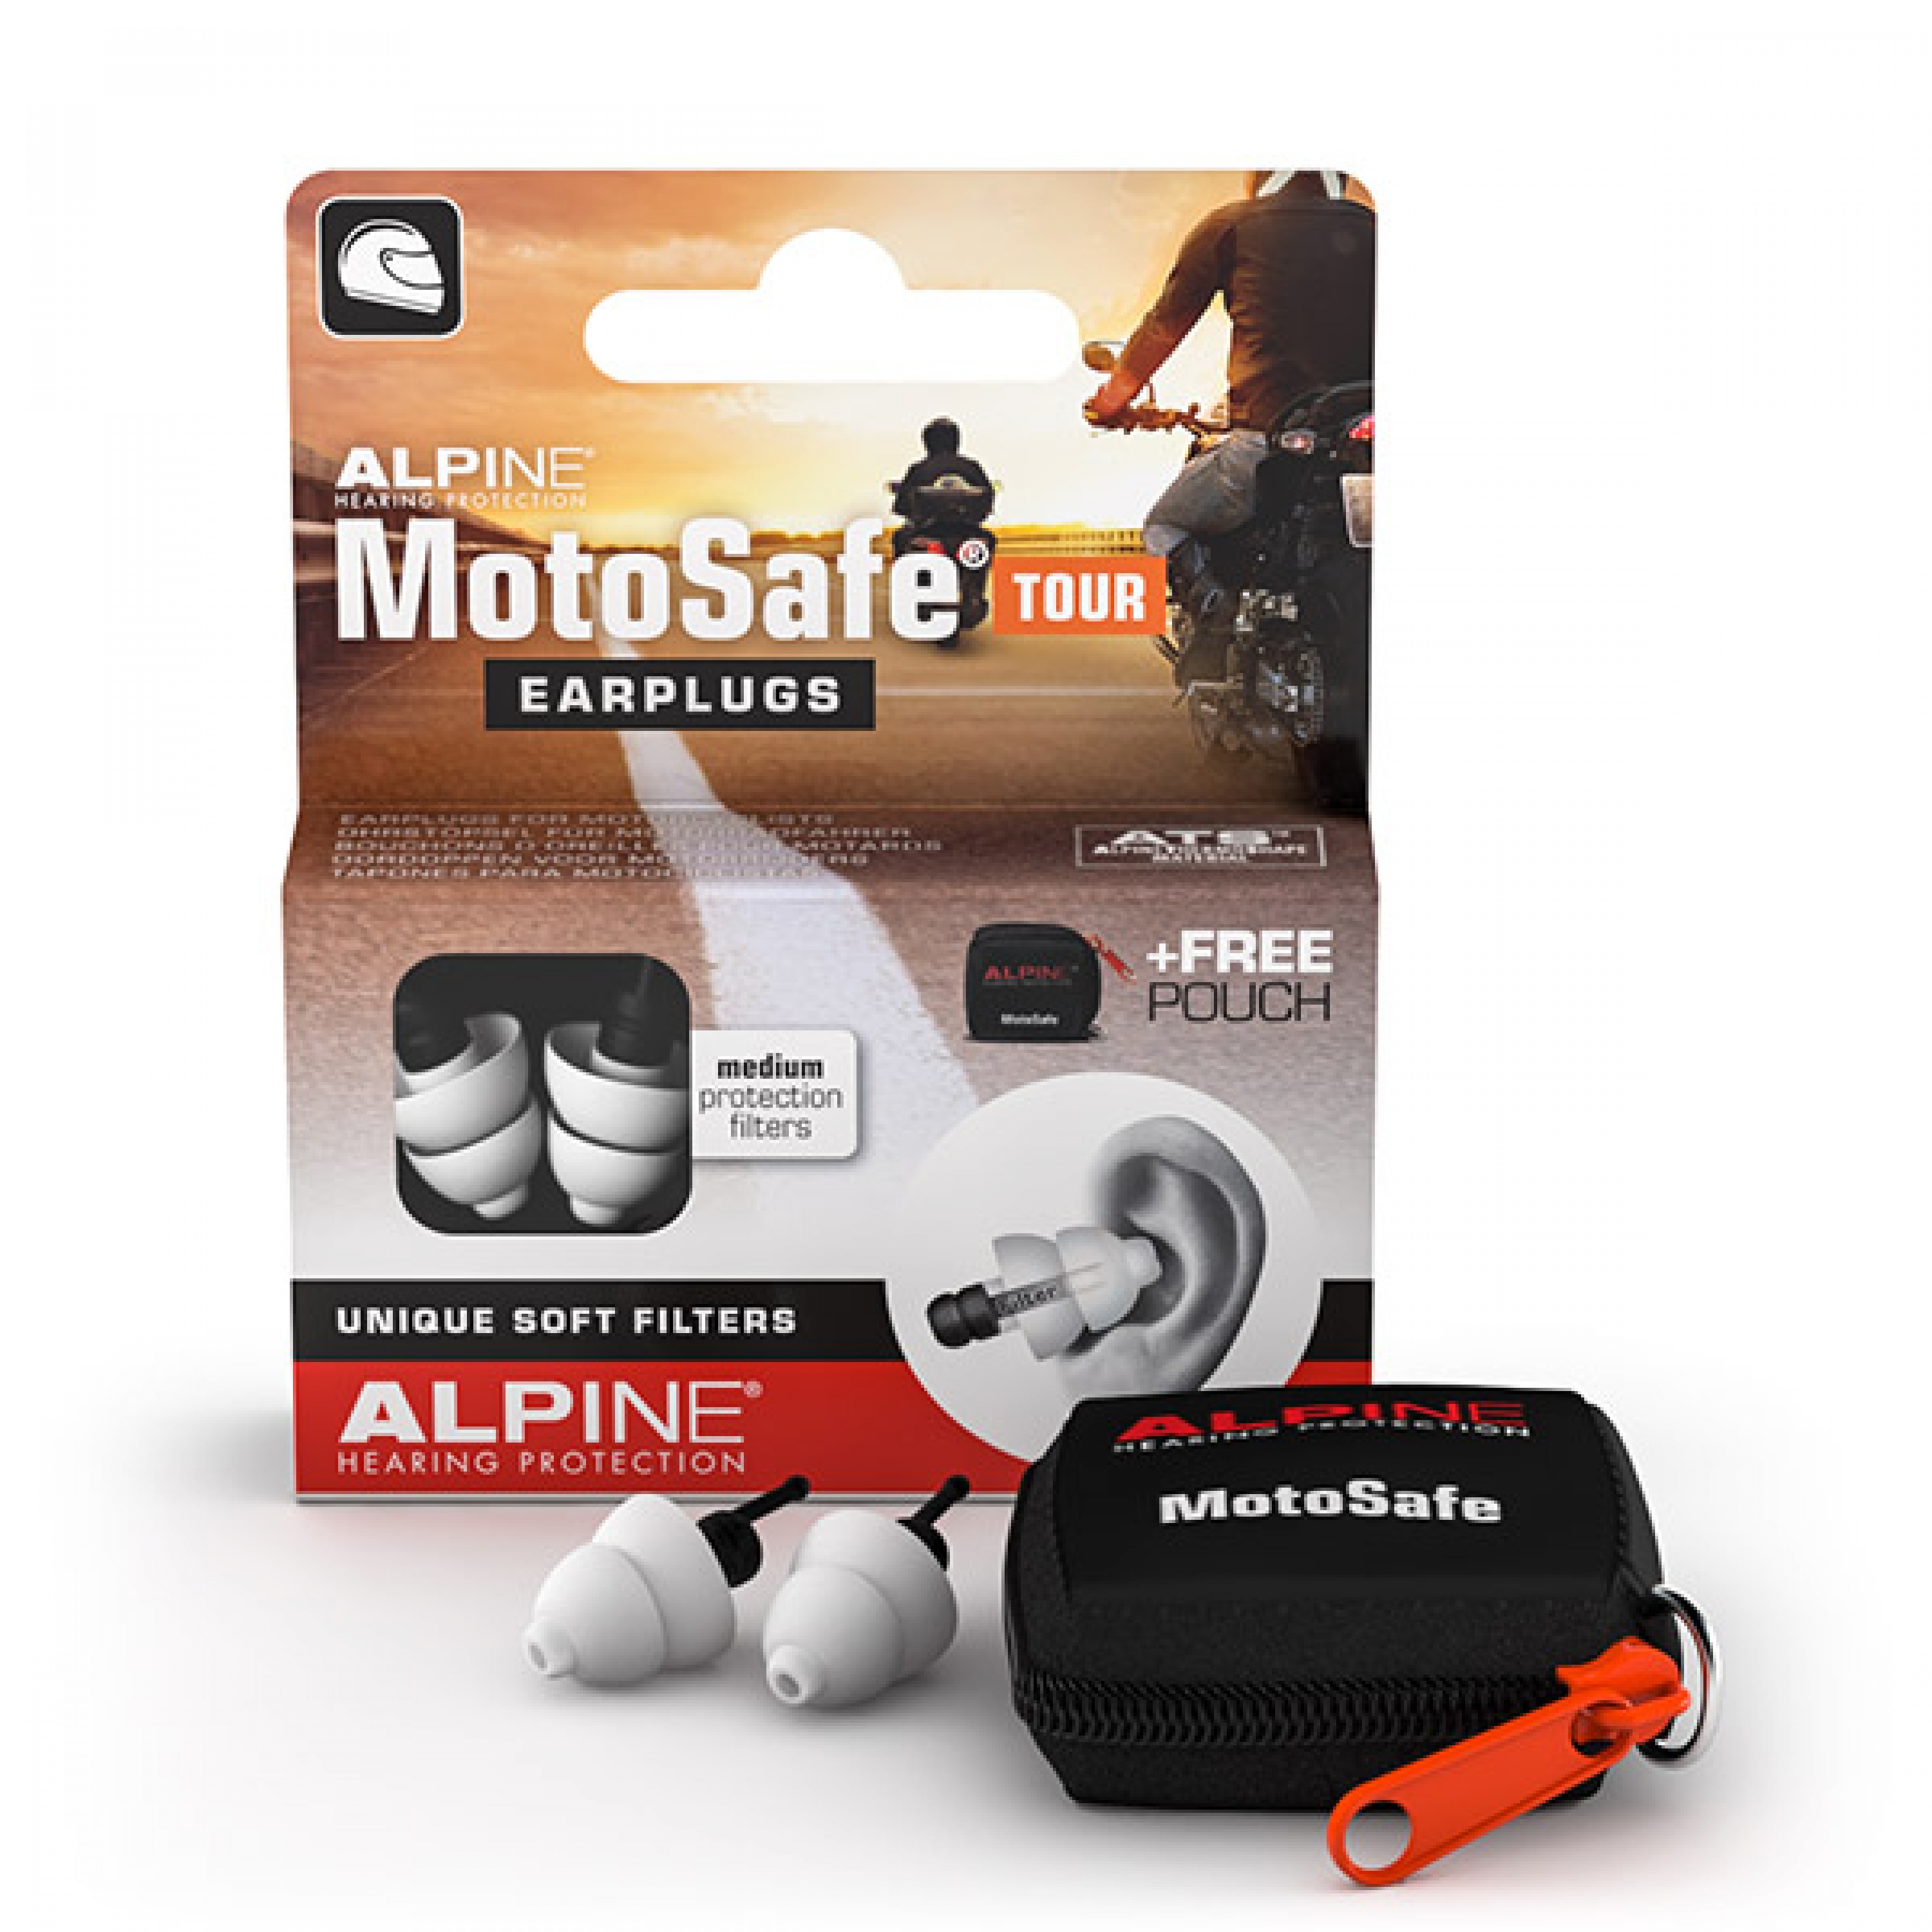 Alpine "MotoSafe Tour" Gehörschutz